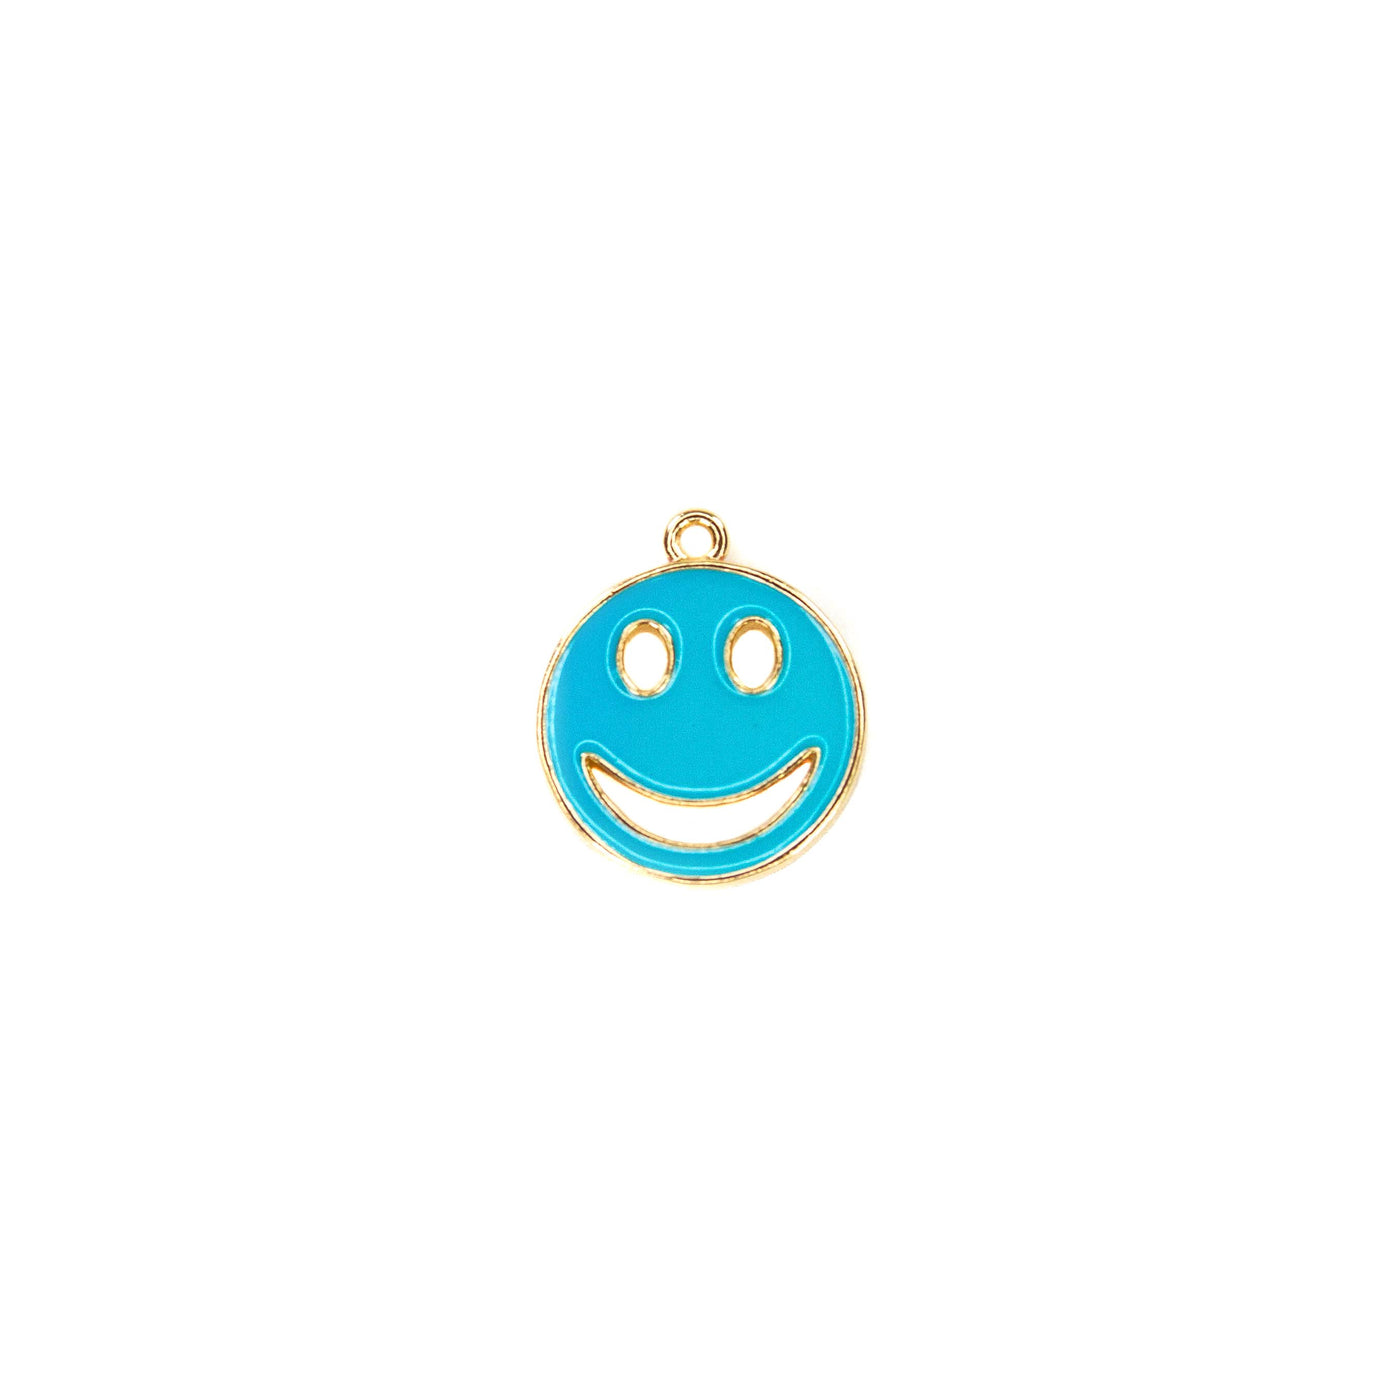 Happy Smile Face Necklace Bracelet Charm - Blue